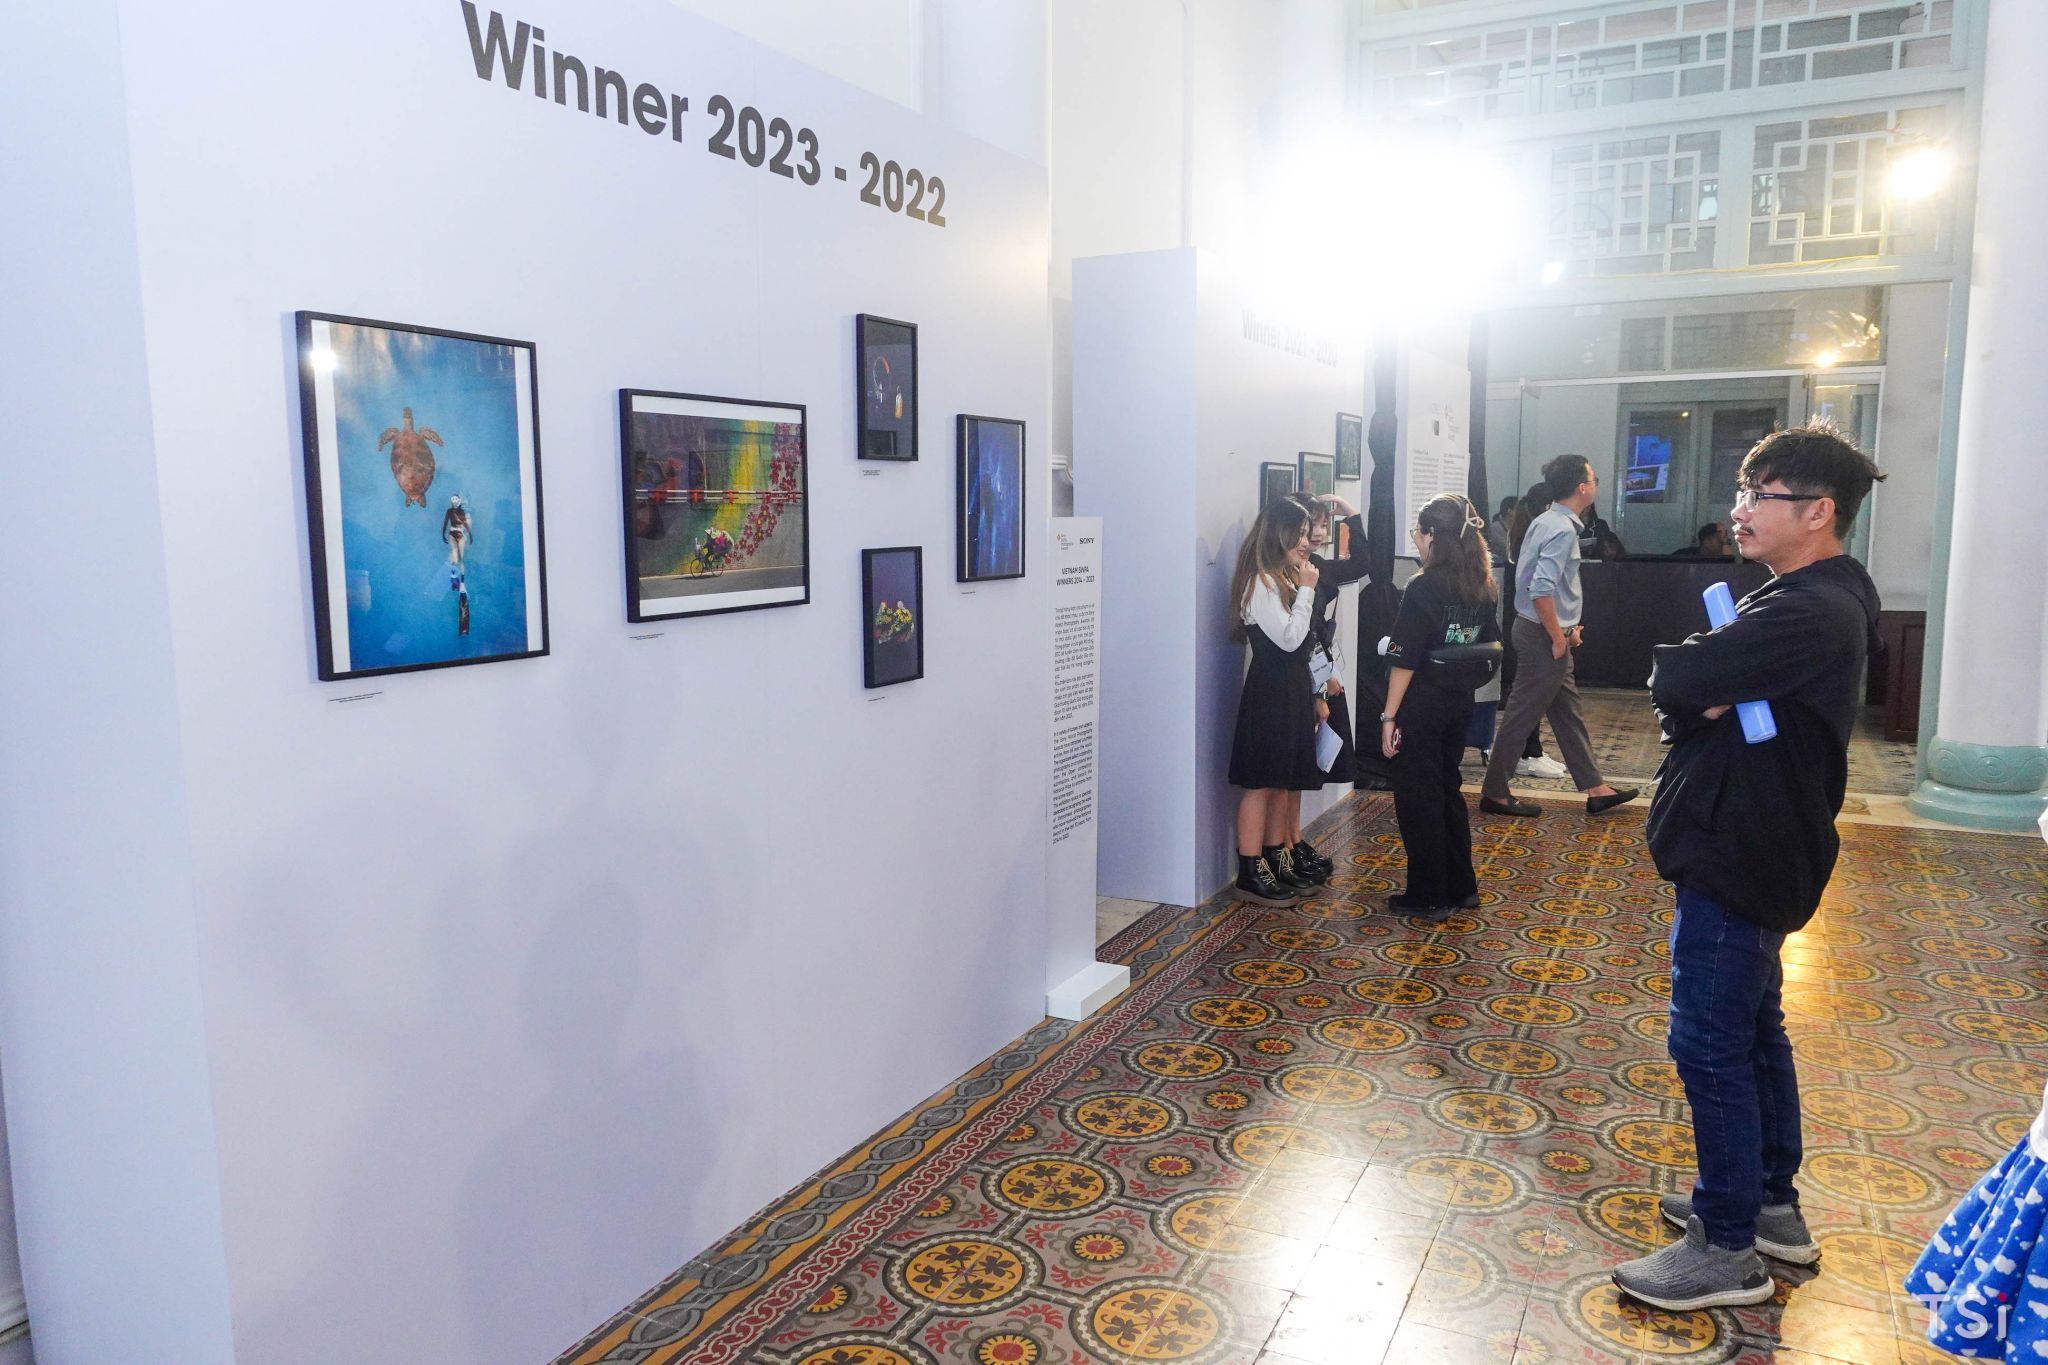 Đang diễn ra triển lãm những bức ảnh xuất sắc tại Giải thưởng Nhiếp ảnh Thế giới Sony